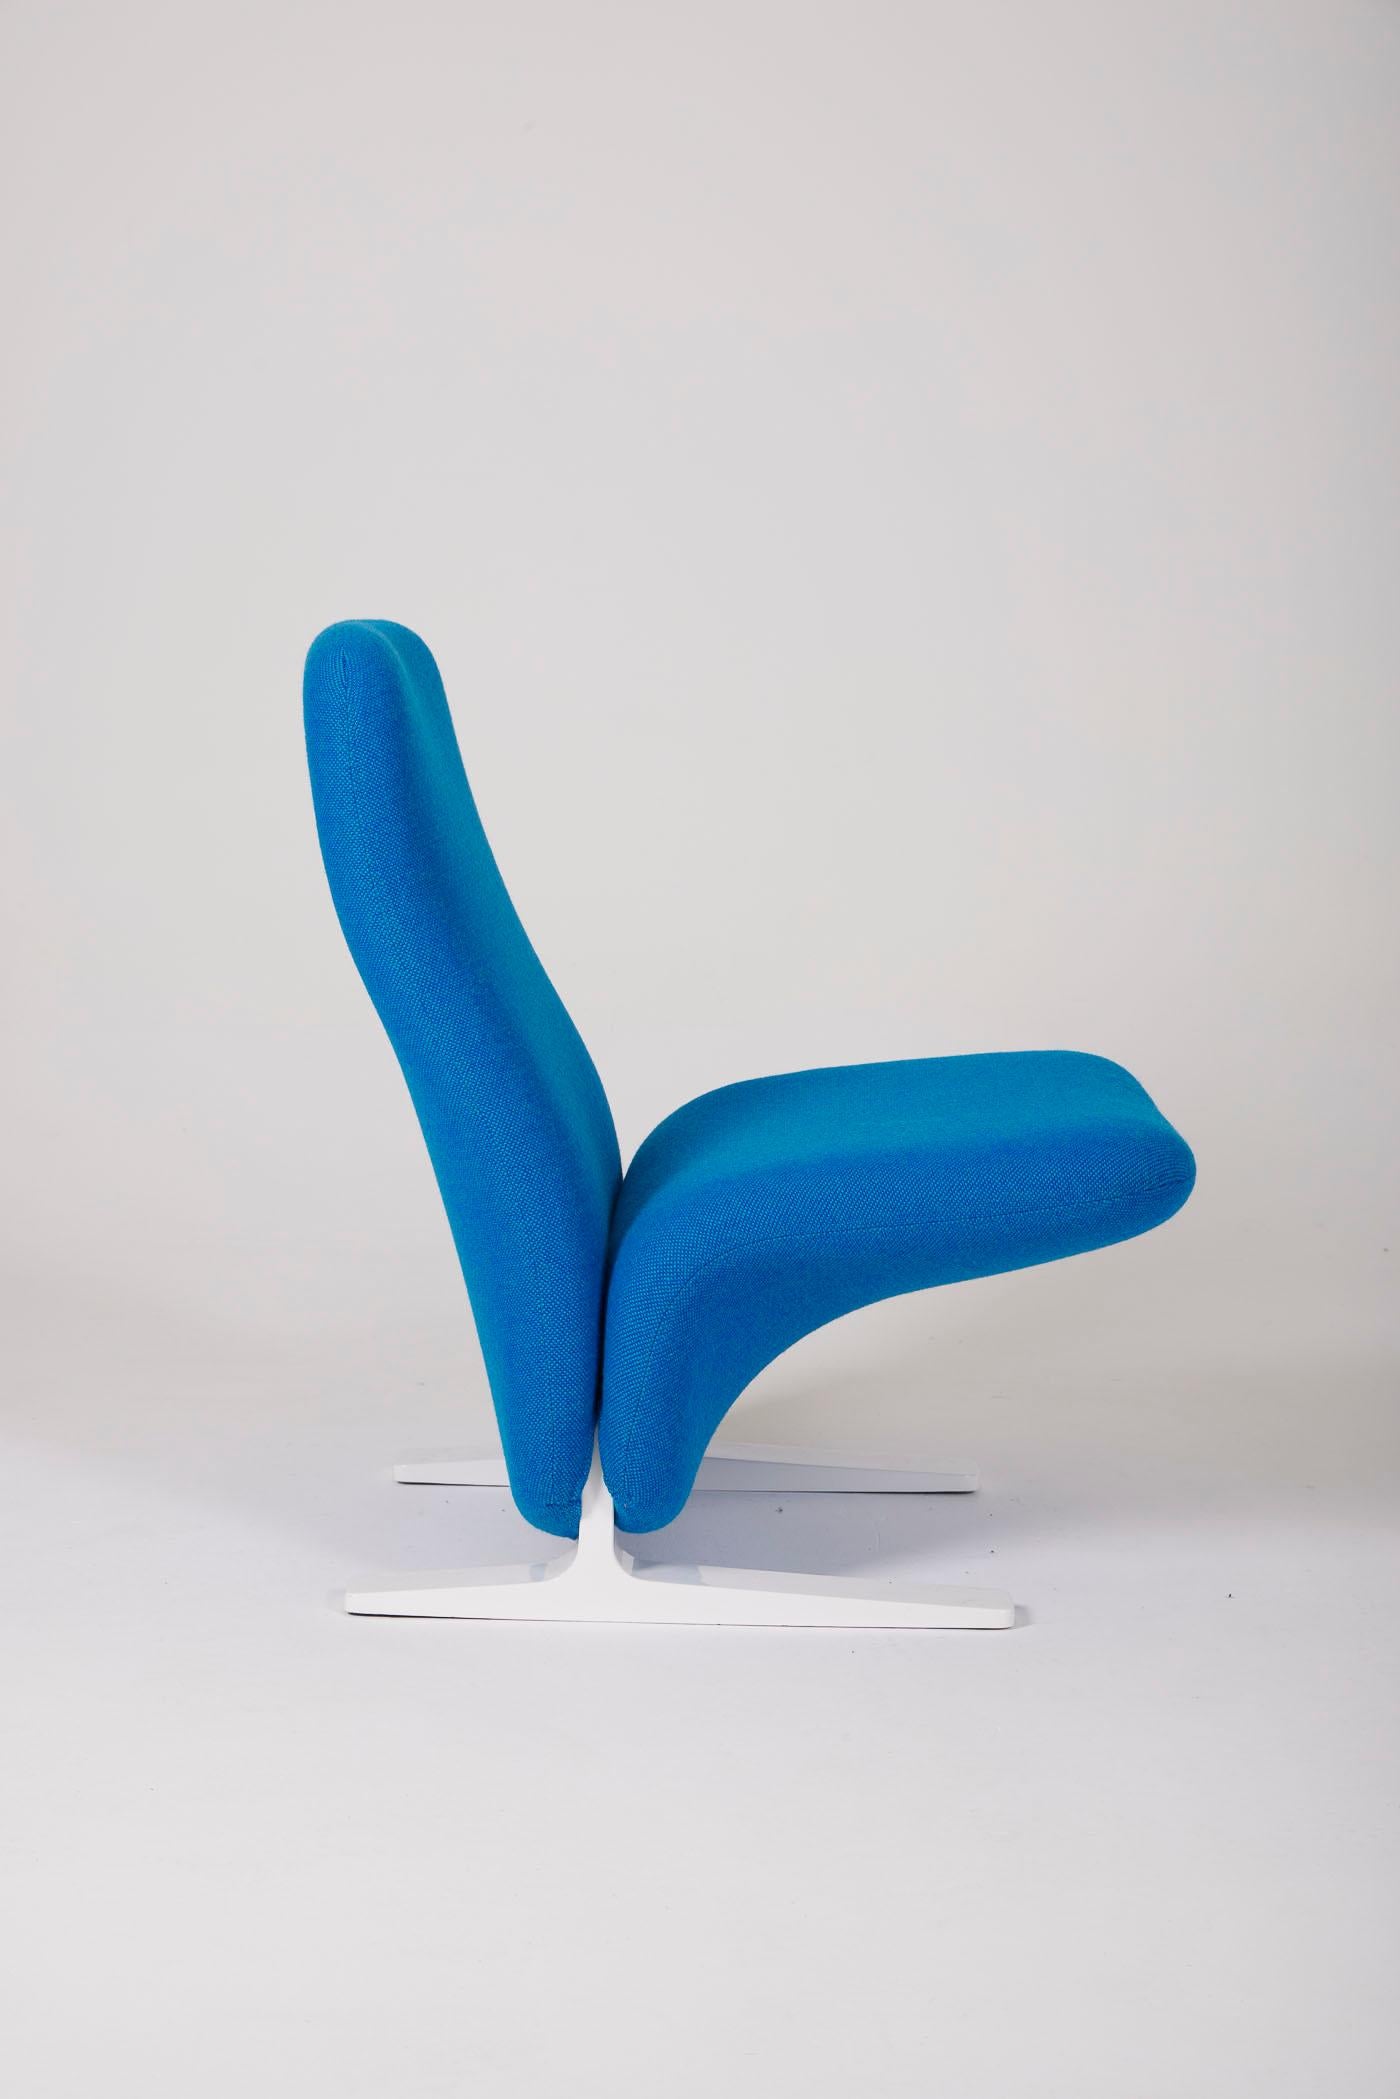 Pierre Paulin F780 armchair For Sale 3